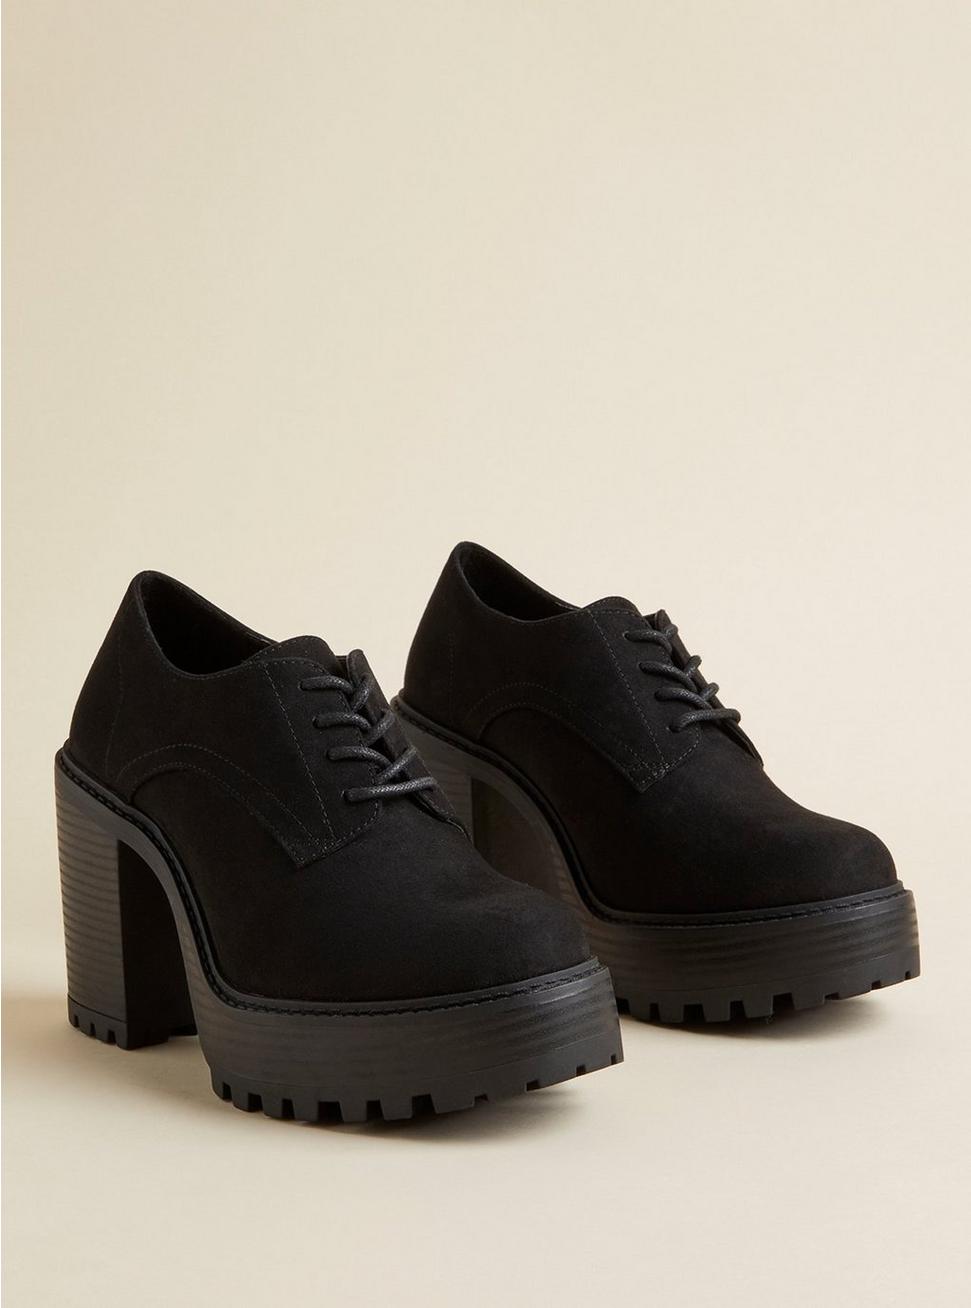 Plus Size Platform Oxford Heel, BLACK, hi-res